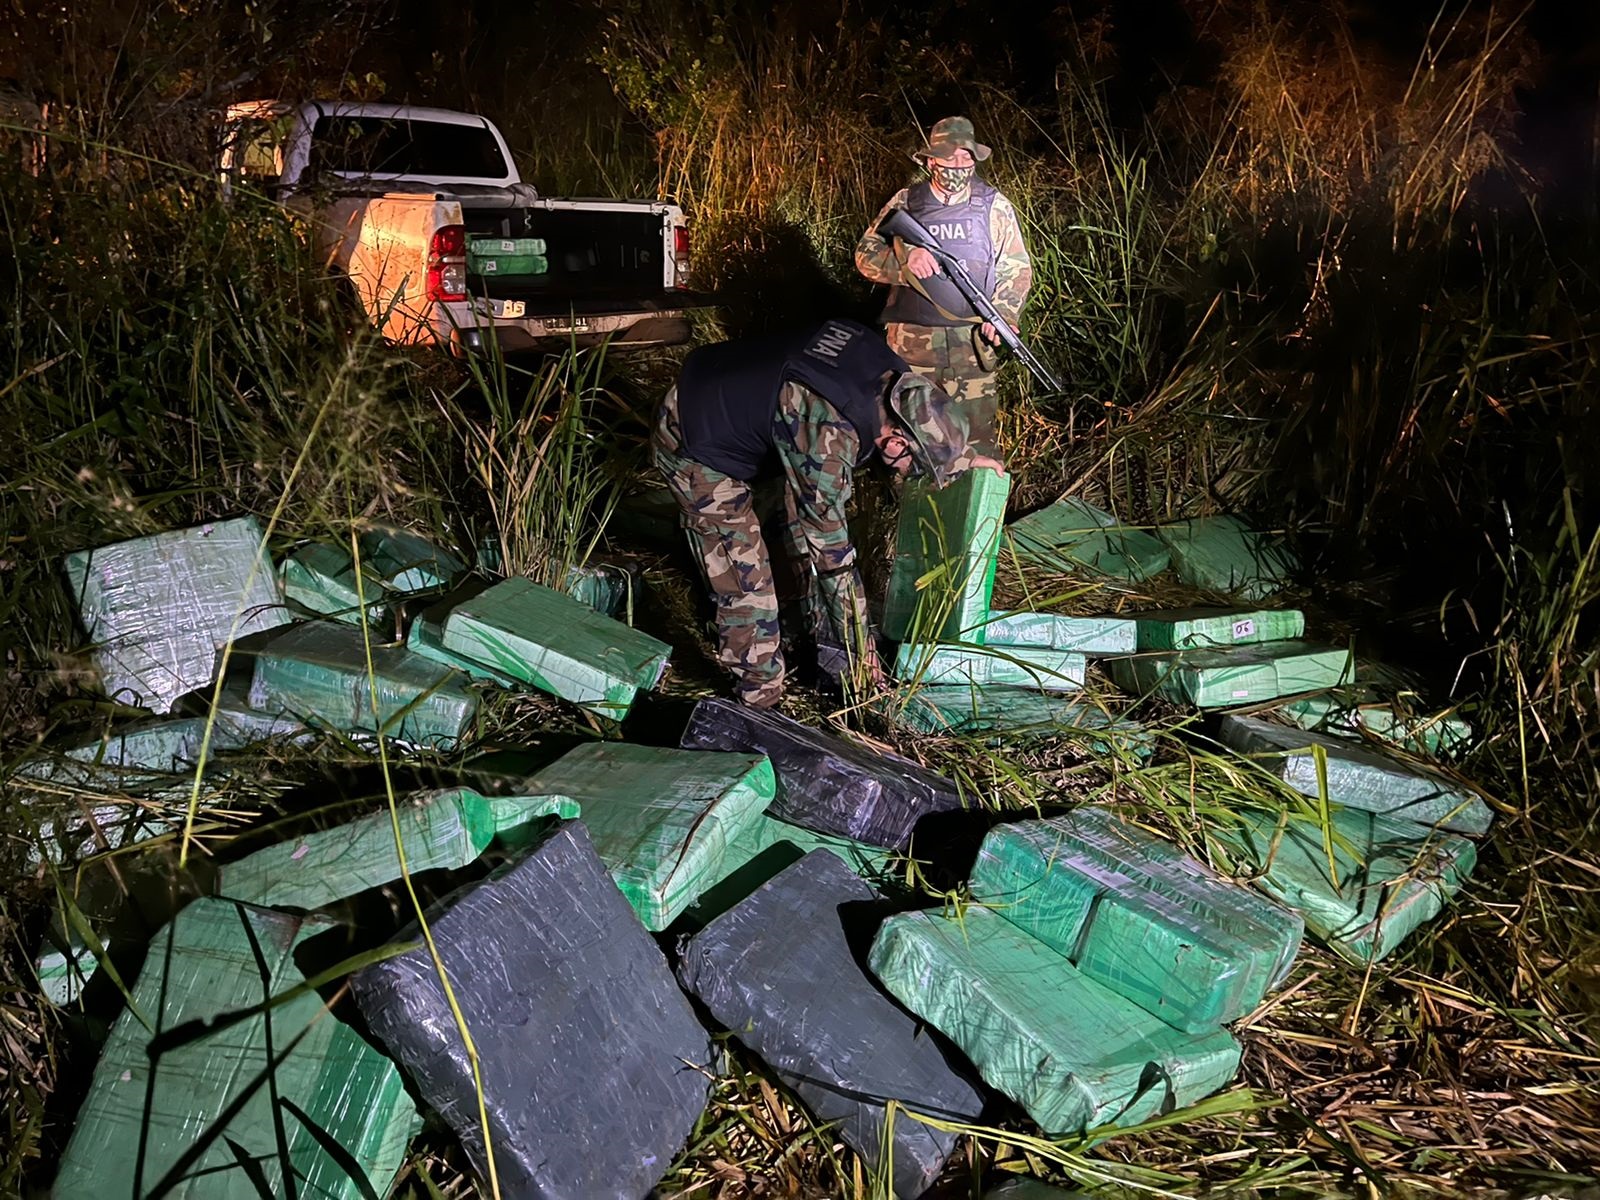 Prefectura secuestró más de 2.200 kilogramos de marihuana en Eldorado y Puerto Iguazú